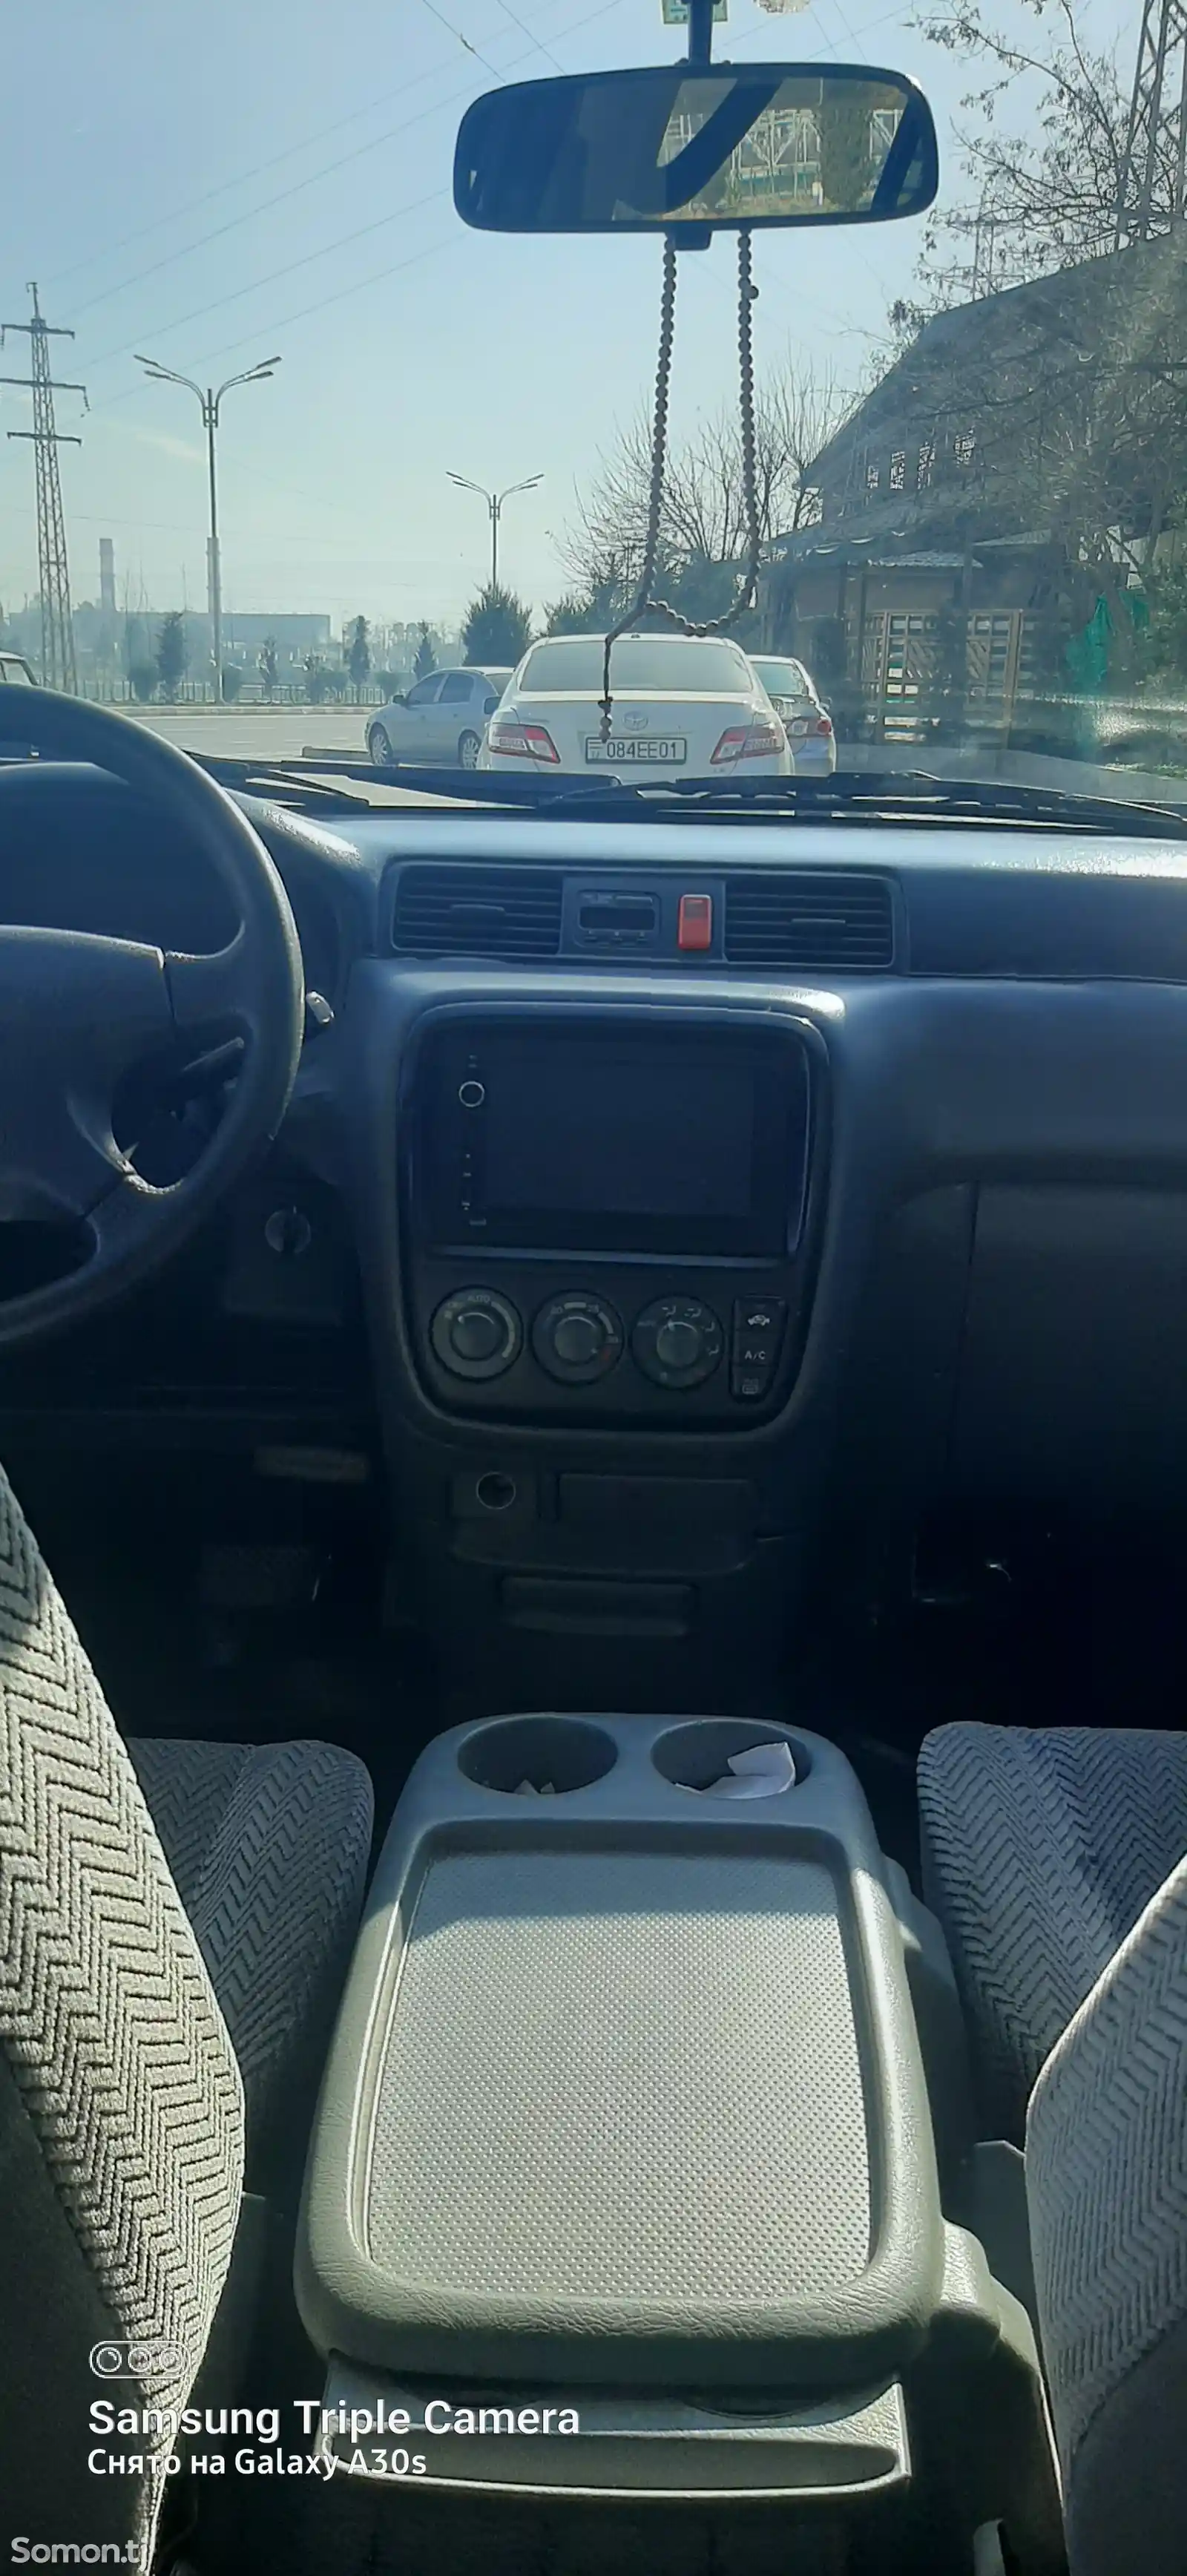 Honda CR-V, 1997-2